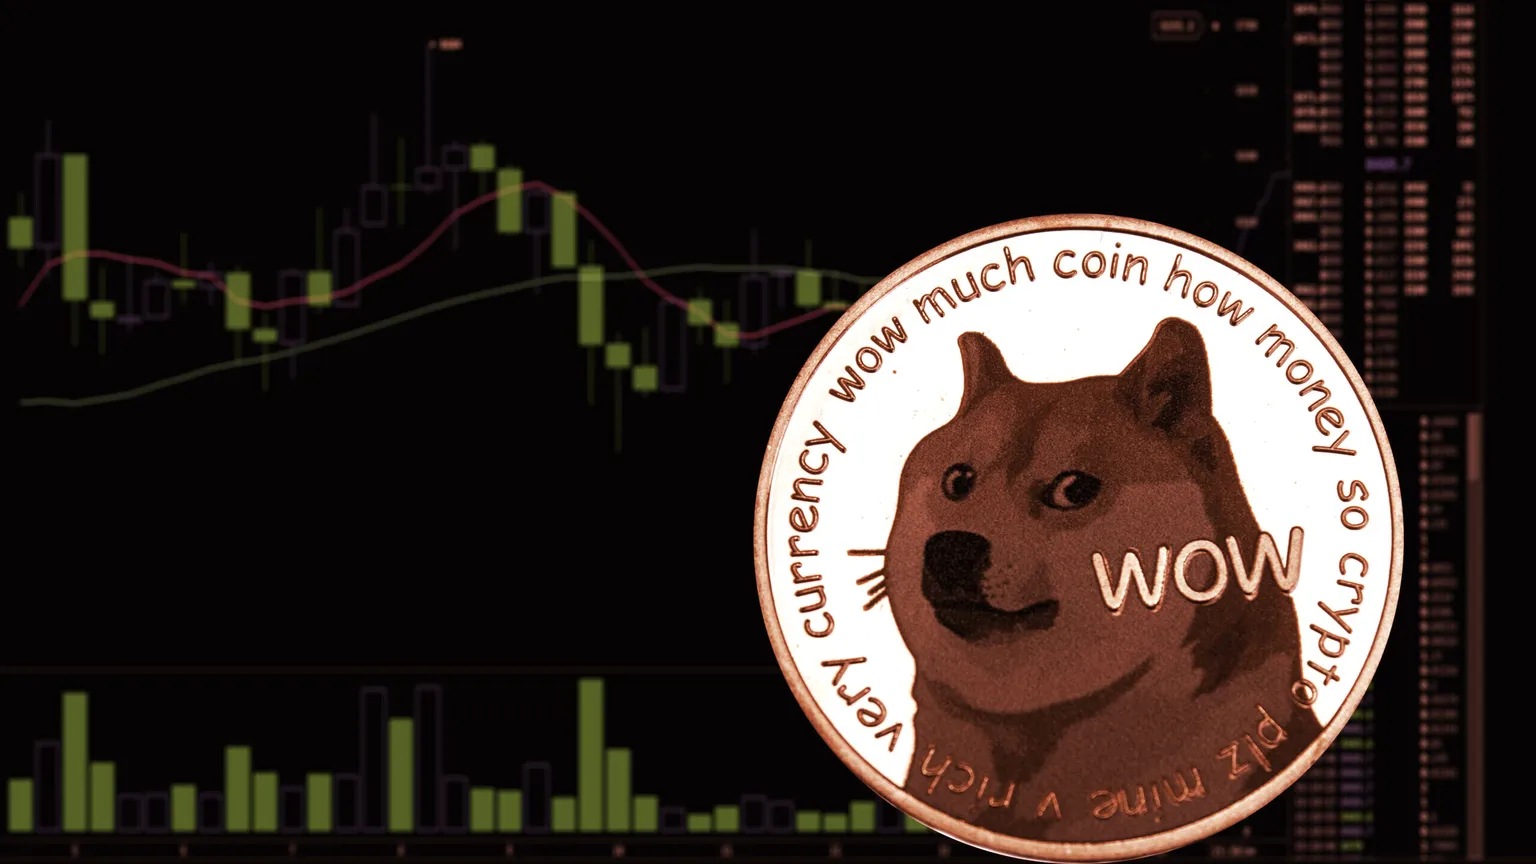 En medio de mucho alboroto, Dogecoin ha subido hasta convertirse en la octava criptomoneda más grande por capitalización de mercado. Imagen: Shutterstock